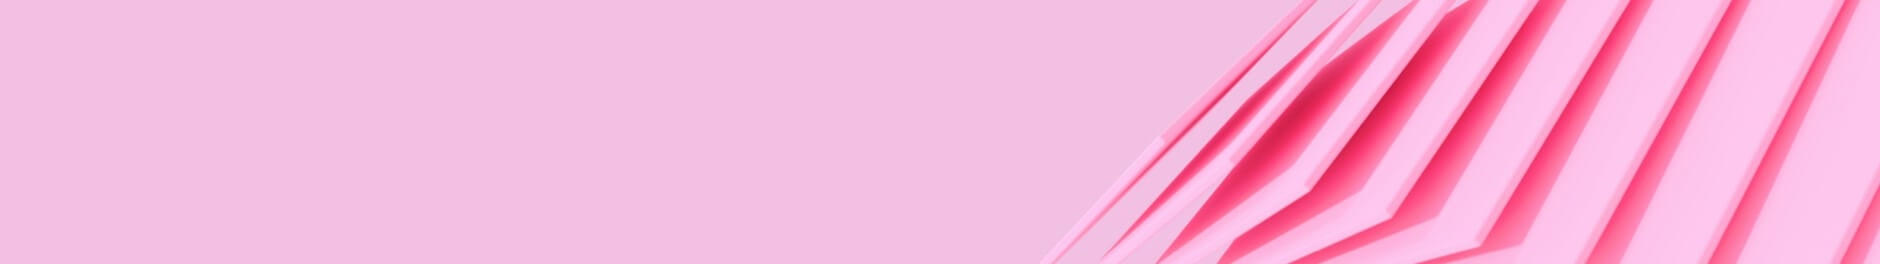 Rosafarbene Karten auf rosafarbenem Hintergrund